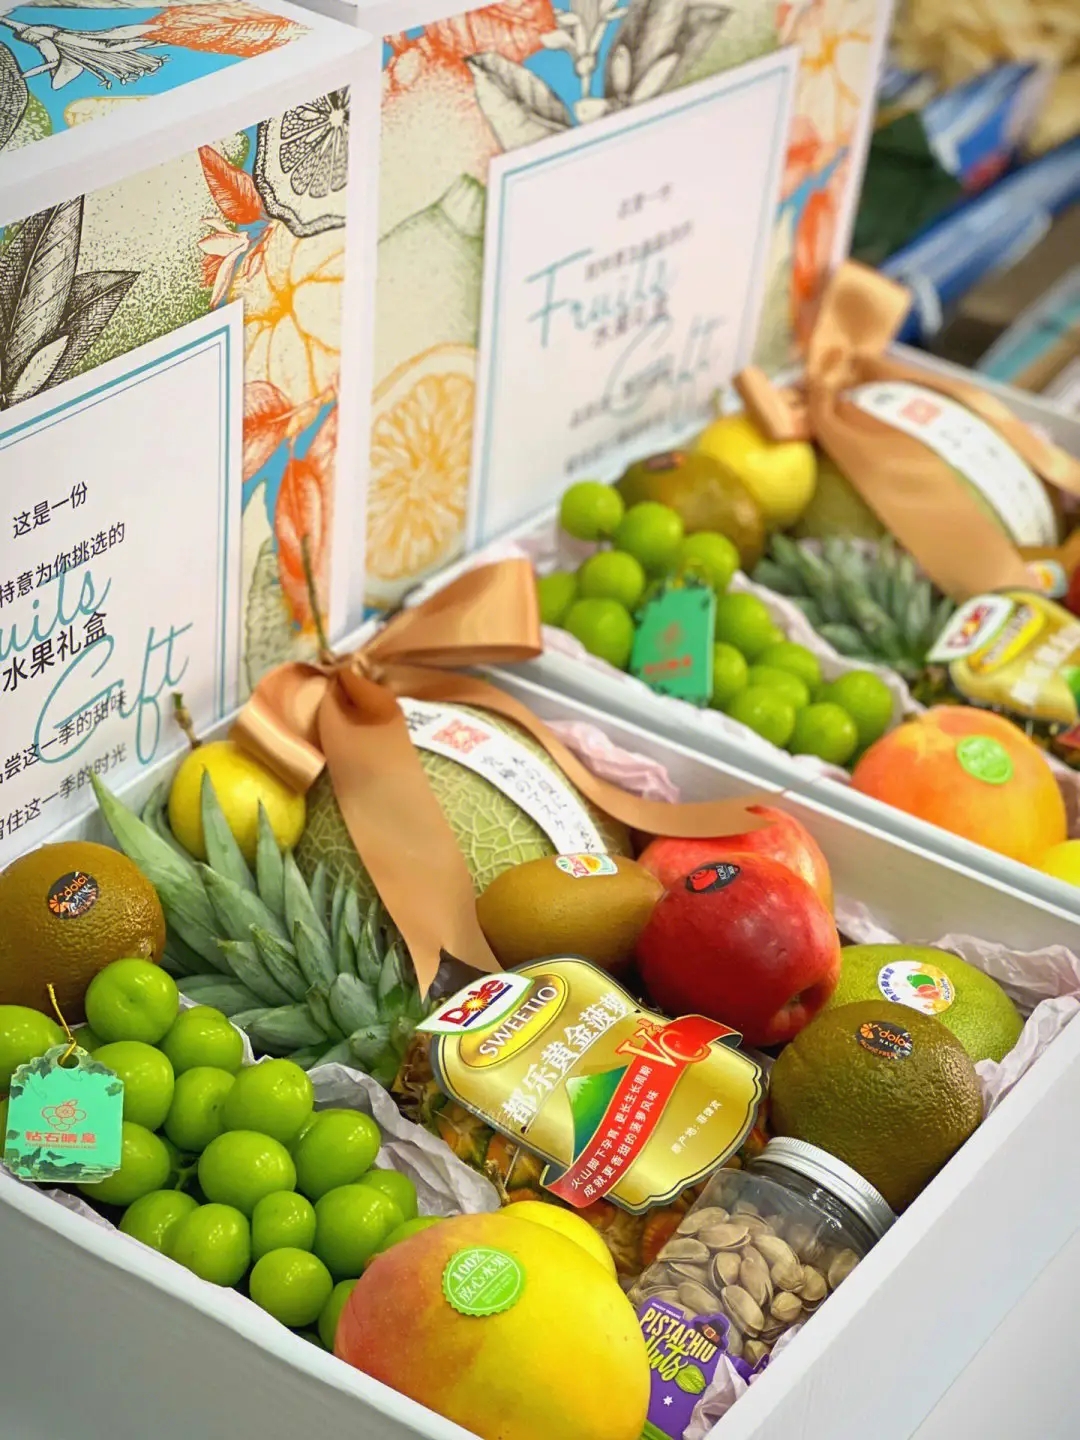 分享在定做福州水果礼盒的时候要重视健康与美味